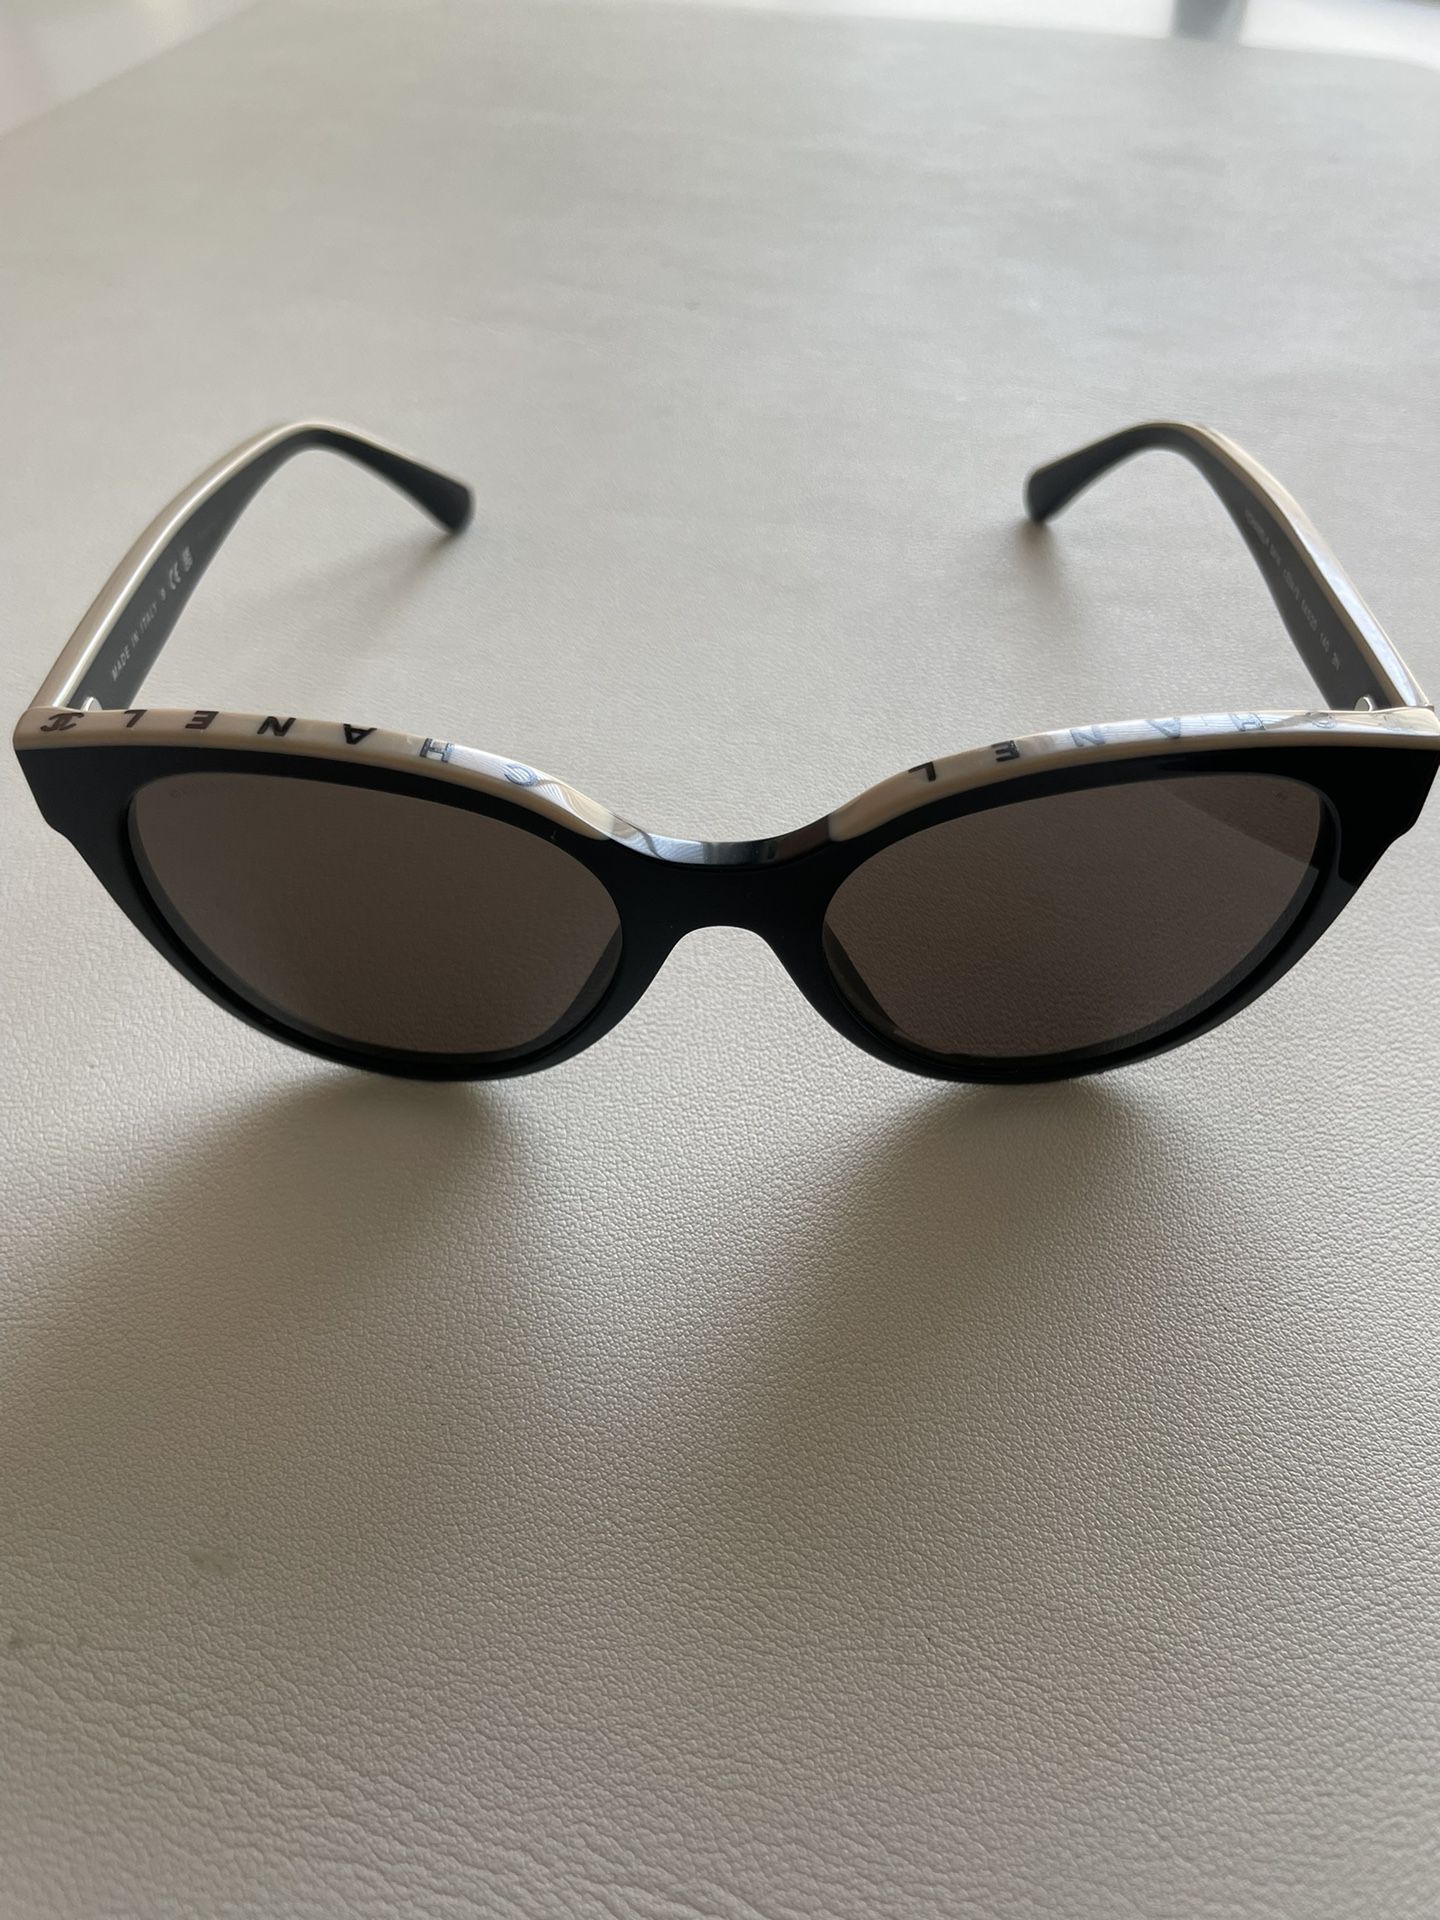 Chanel Butterfly Glasses Black/beige